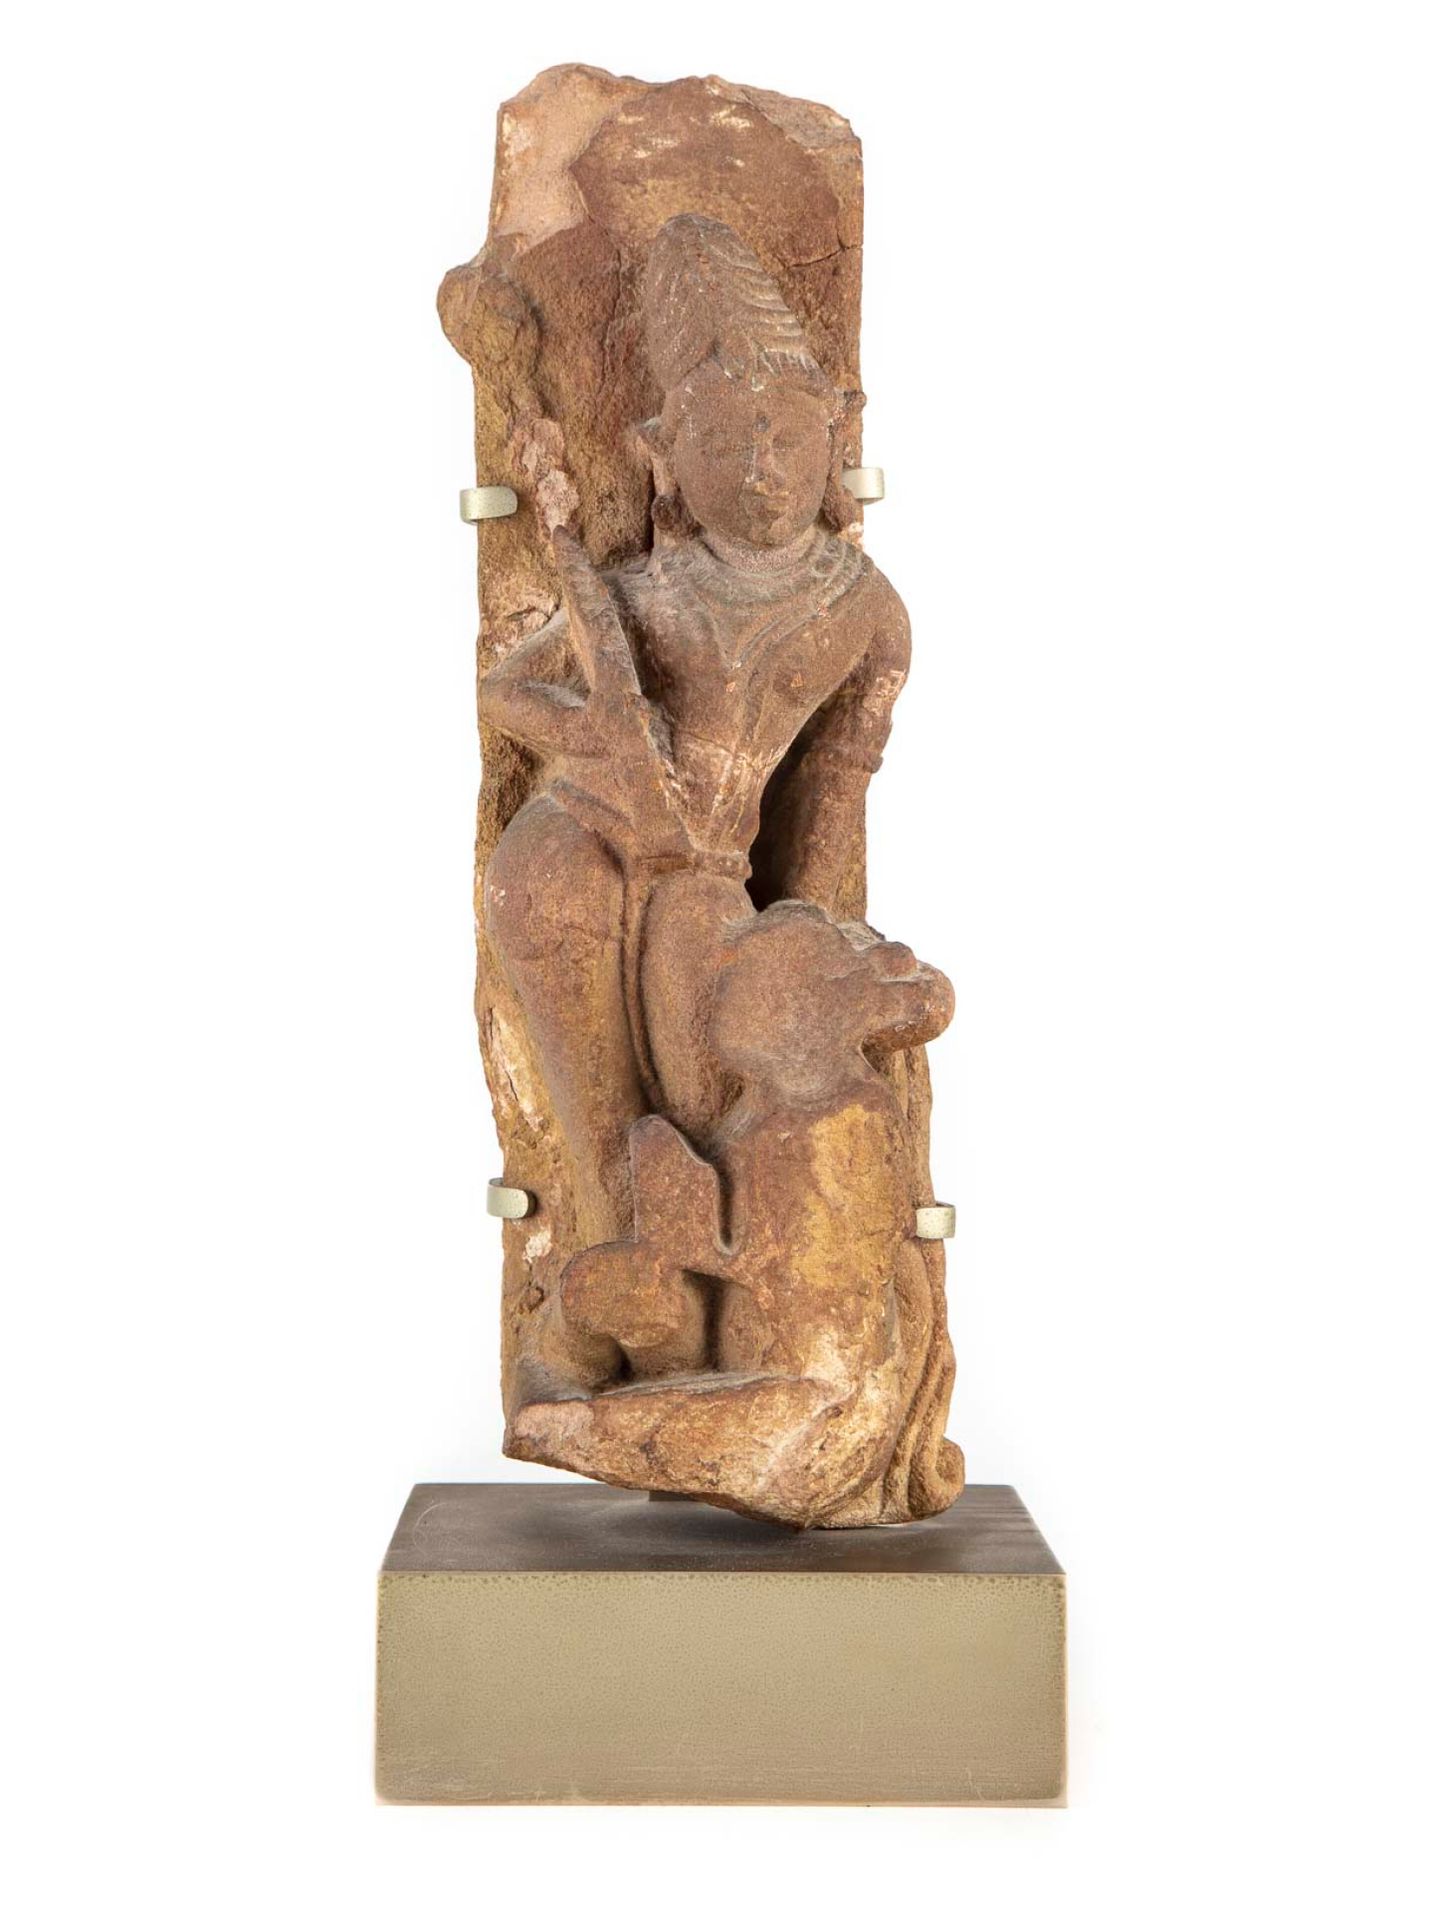 INDE 印度

一座寺庙的高浮雕，其上刻有印度教神灵（湿婆）的图案，该神灵赤身裸体，佩戴珠宝和大型Mukuta头饰。

米色砂岩

印度中部中世纪时期的作品风&hellip;